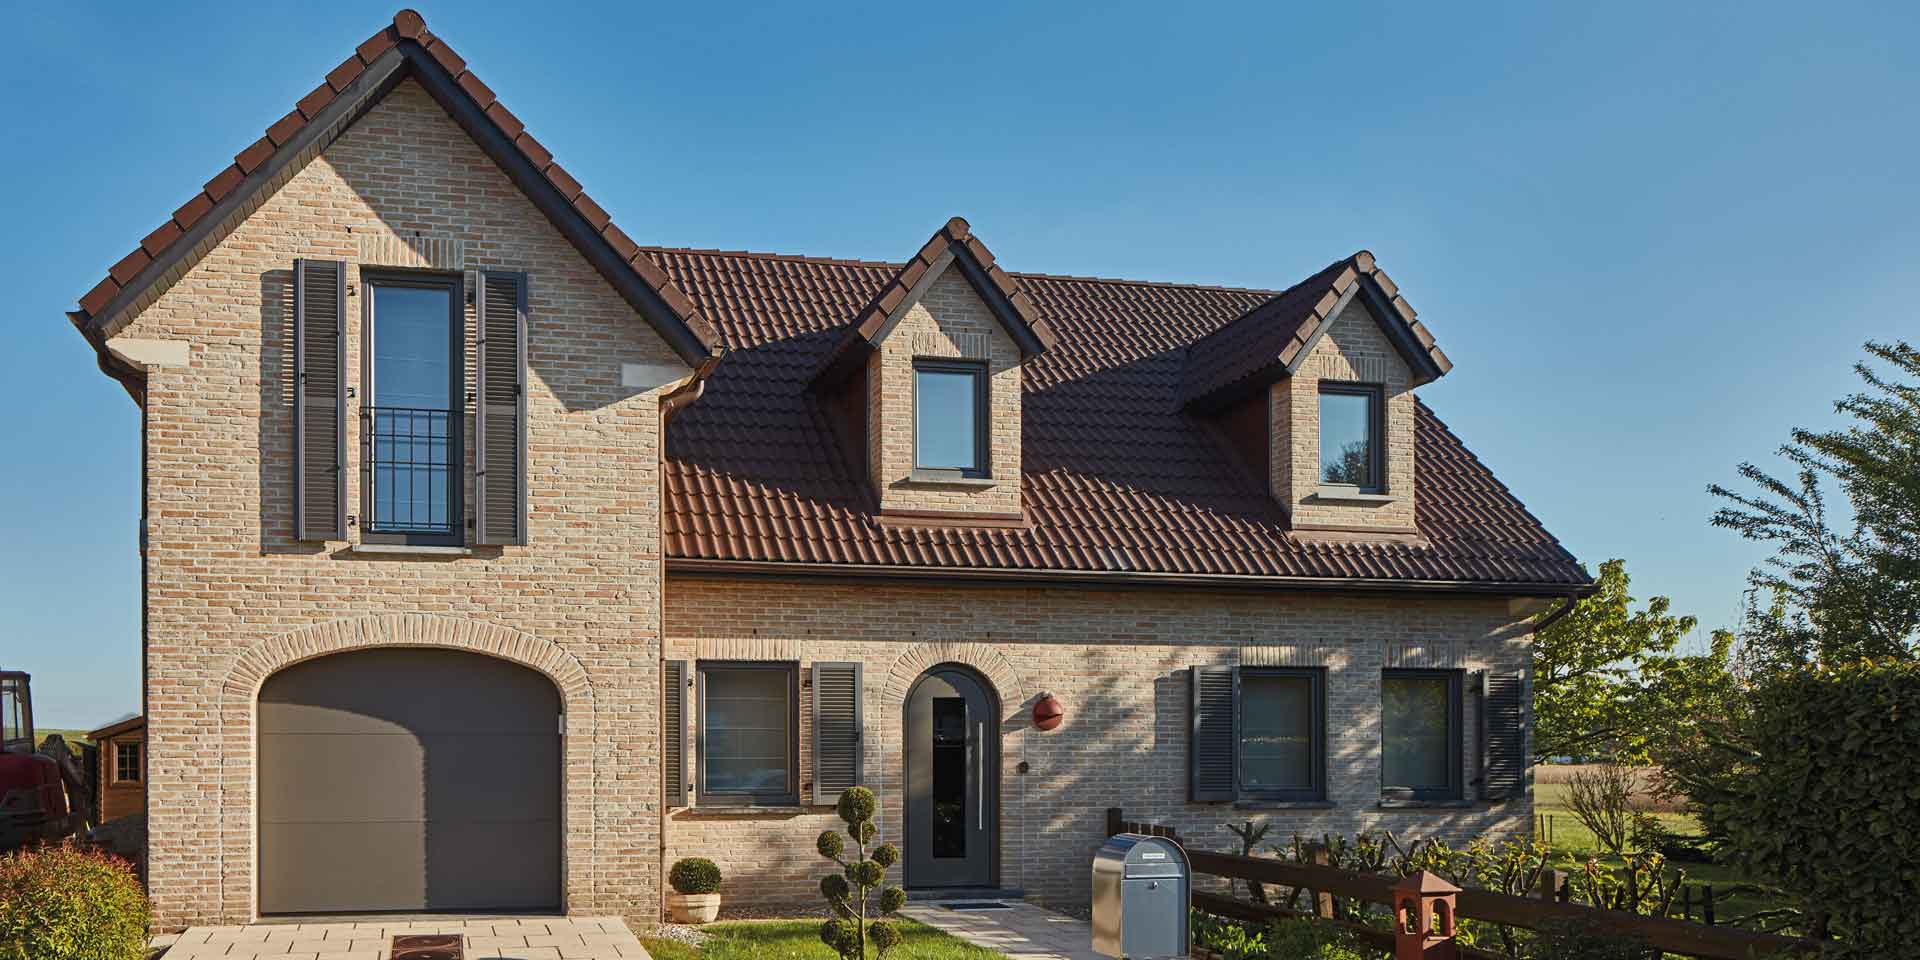 Einfamilienhaus mit Steinfassade mit neuer grauen runden Coplaning Alu Haustür mit grauen Coplaning Holz- Alu Fenster und einem grauen Garagentor.